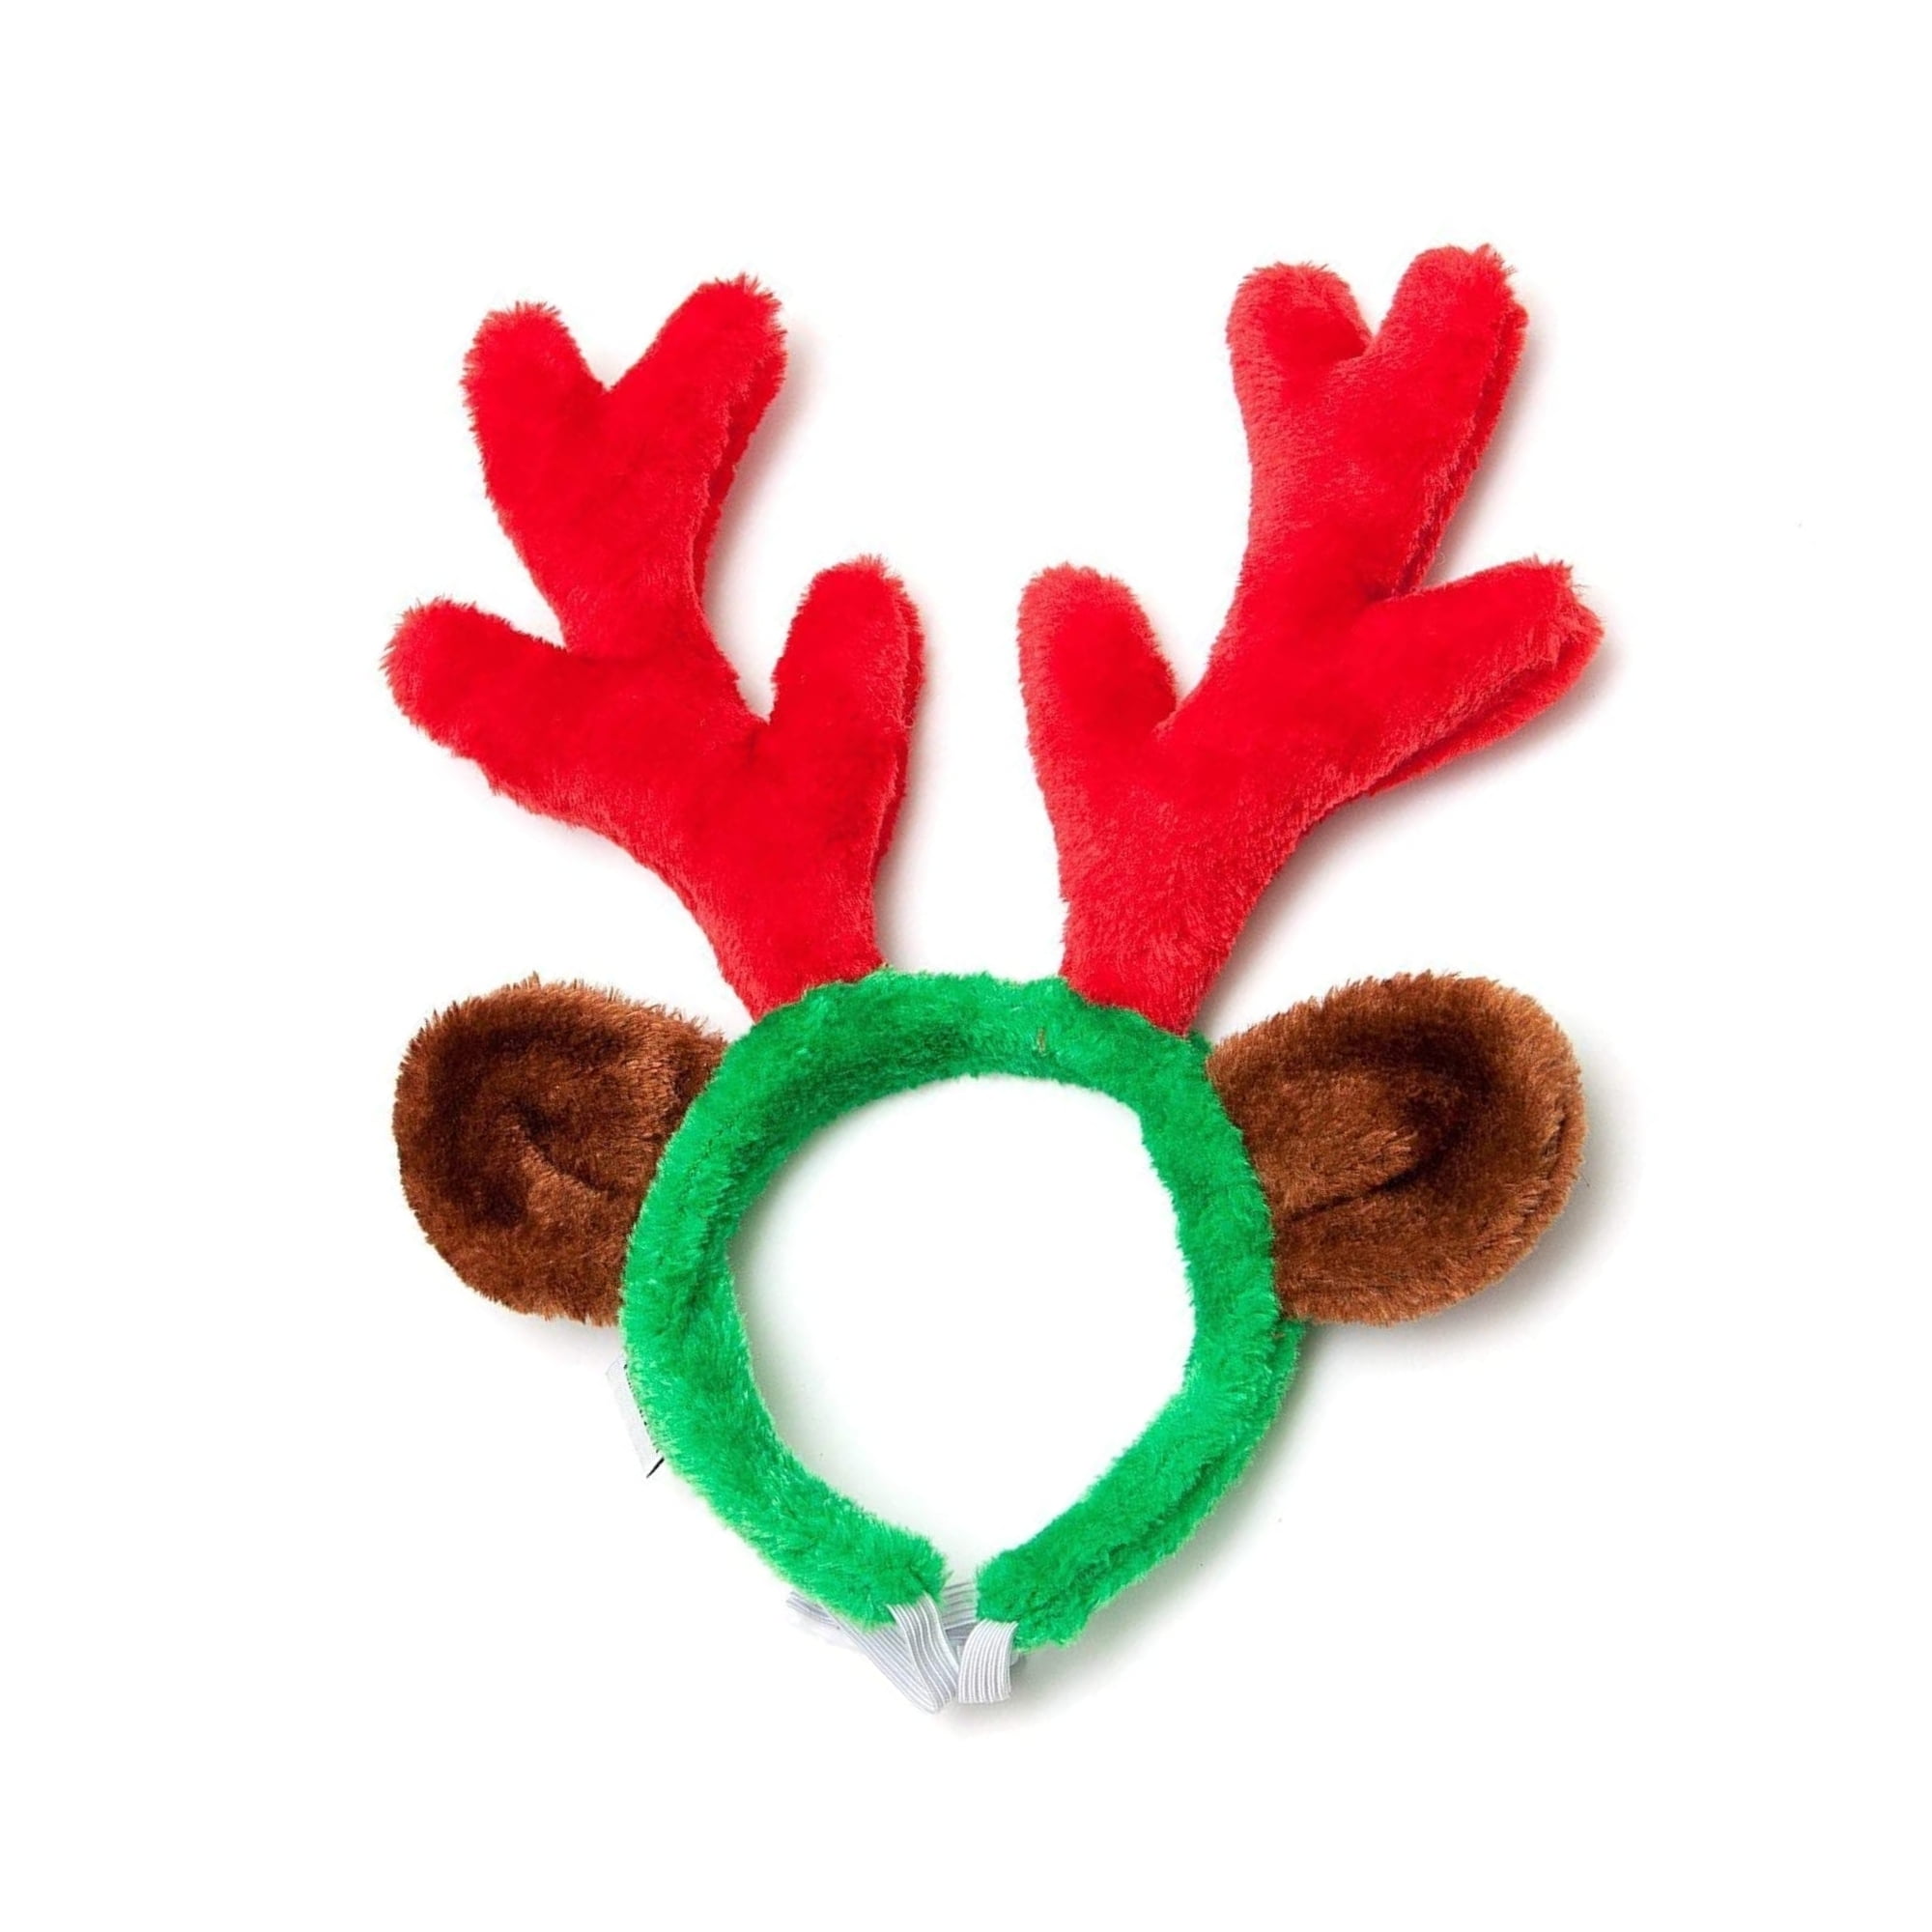 TEHAUX Dog Christmas Reindeer Antlers Headband Classic Elk Hat Headwear Deer Horn Hair Hoops Pet Costumes Accessories for Cat Festival Photo Props S Brown